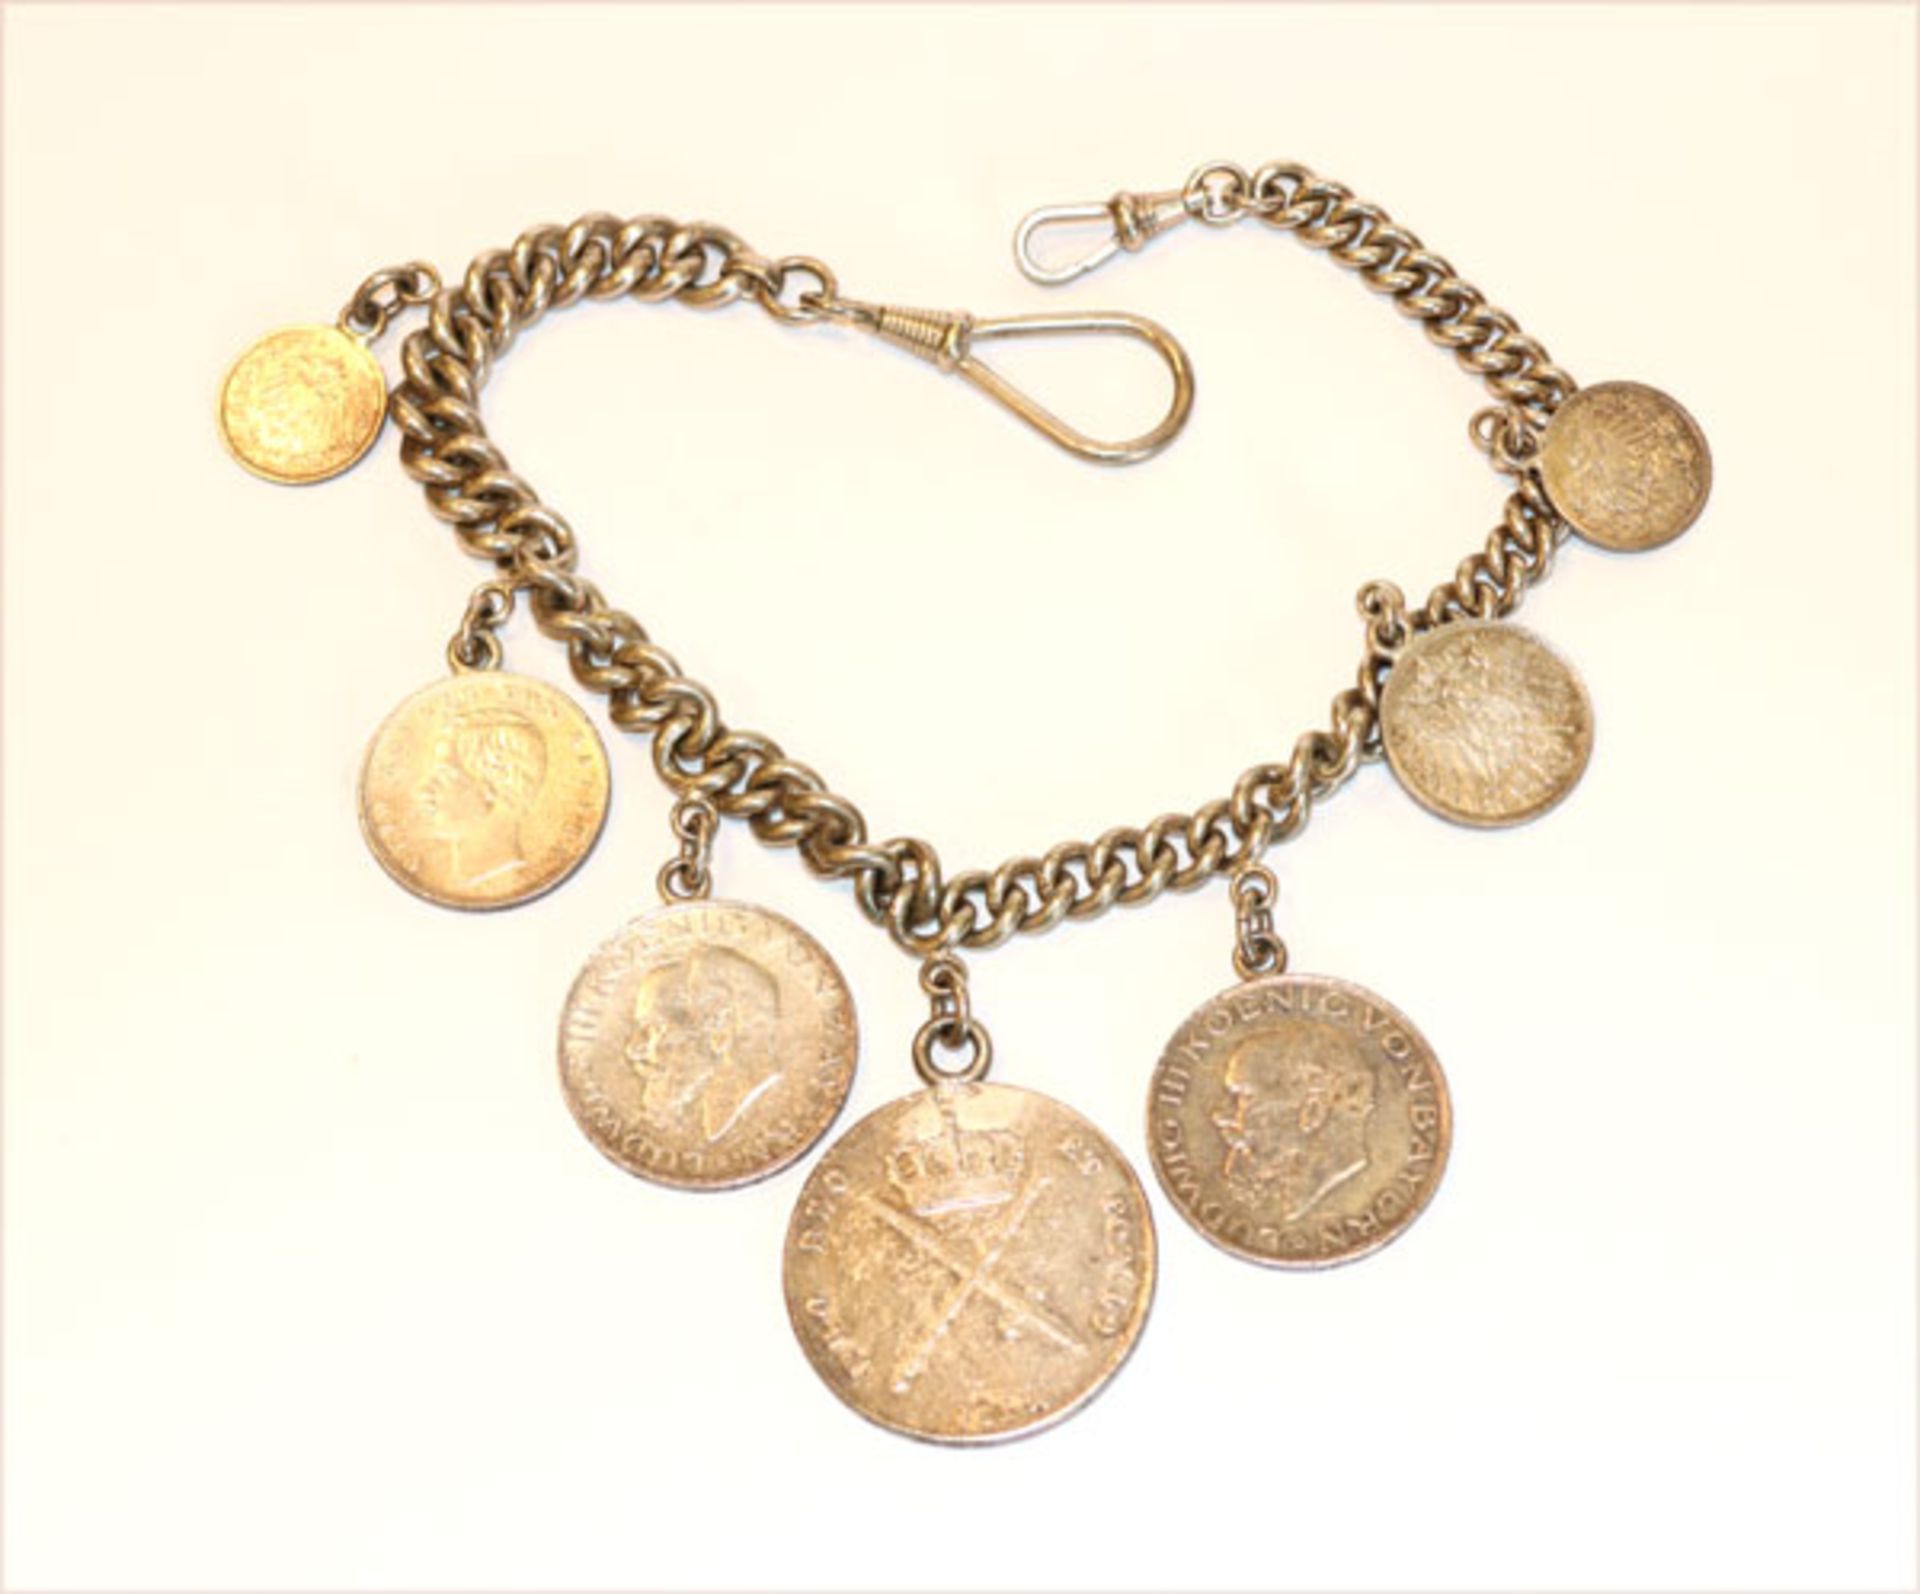 Charivari mit 7 Silbermünzen, zus. 151 gr., an Rundpanzerkette, kein Silber, L 36 cm, Tragespuren